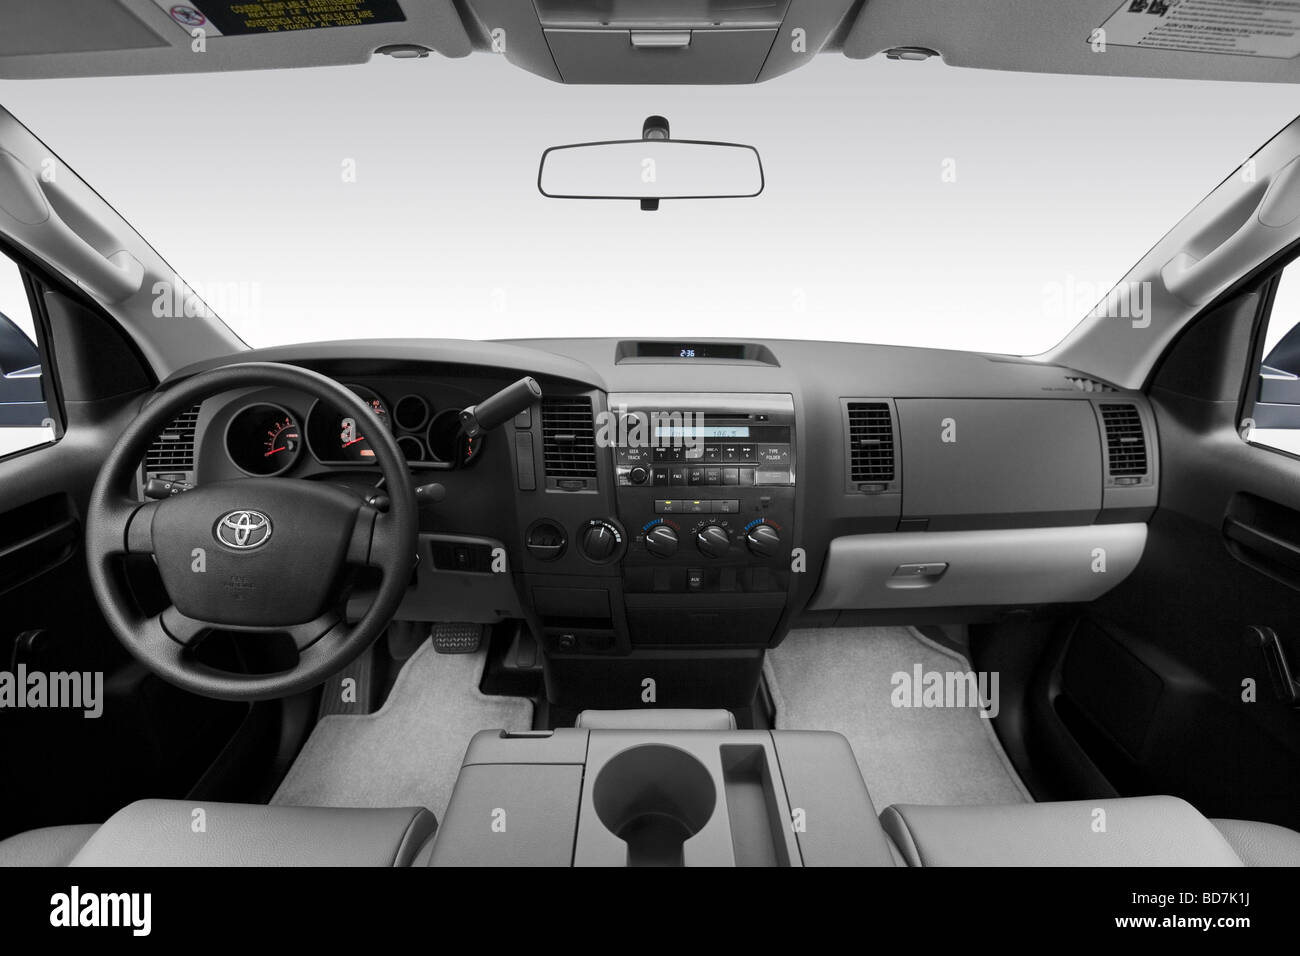 2010 Toyota Tundra in Silver - Dashboard, center console, gear shifter